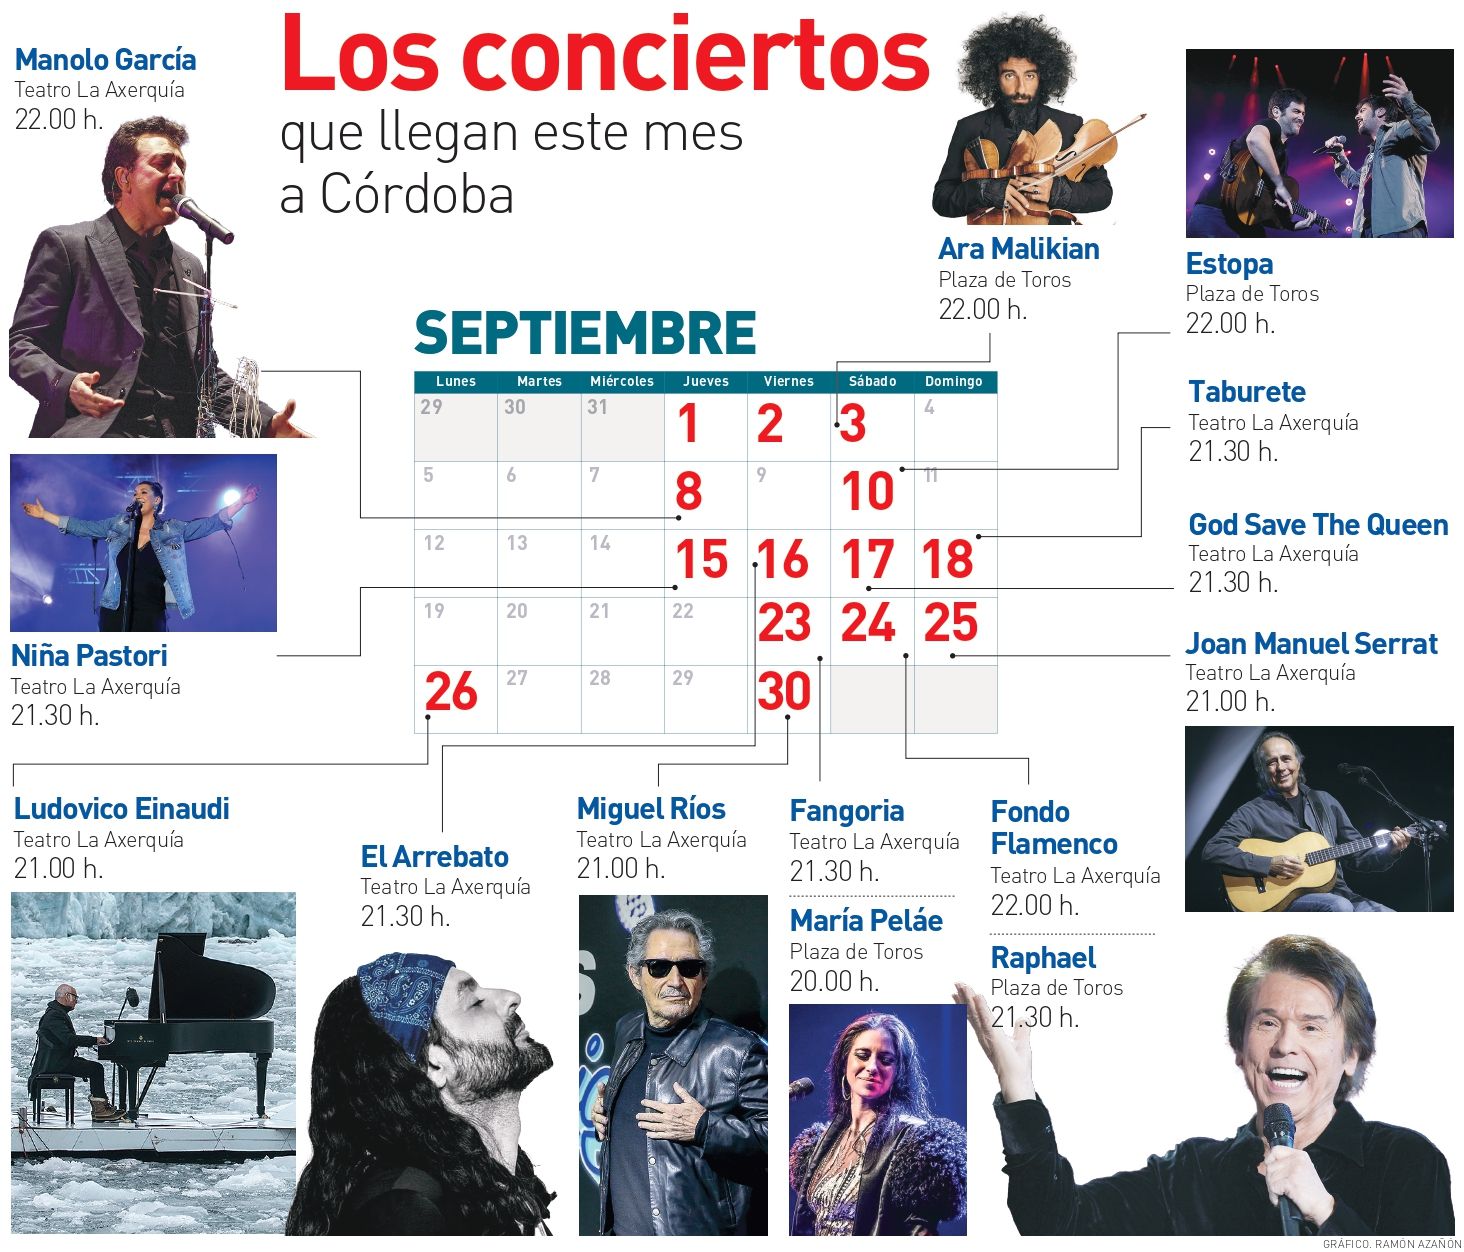 Los conciertos en septiembre en Córdoba.